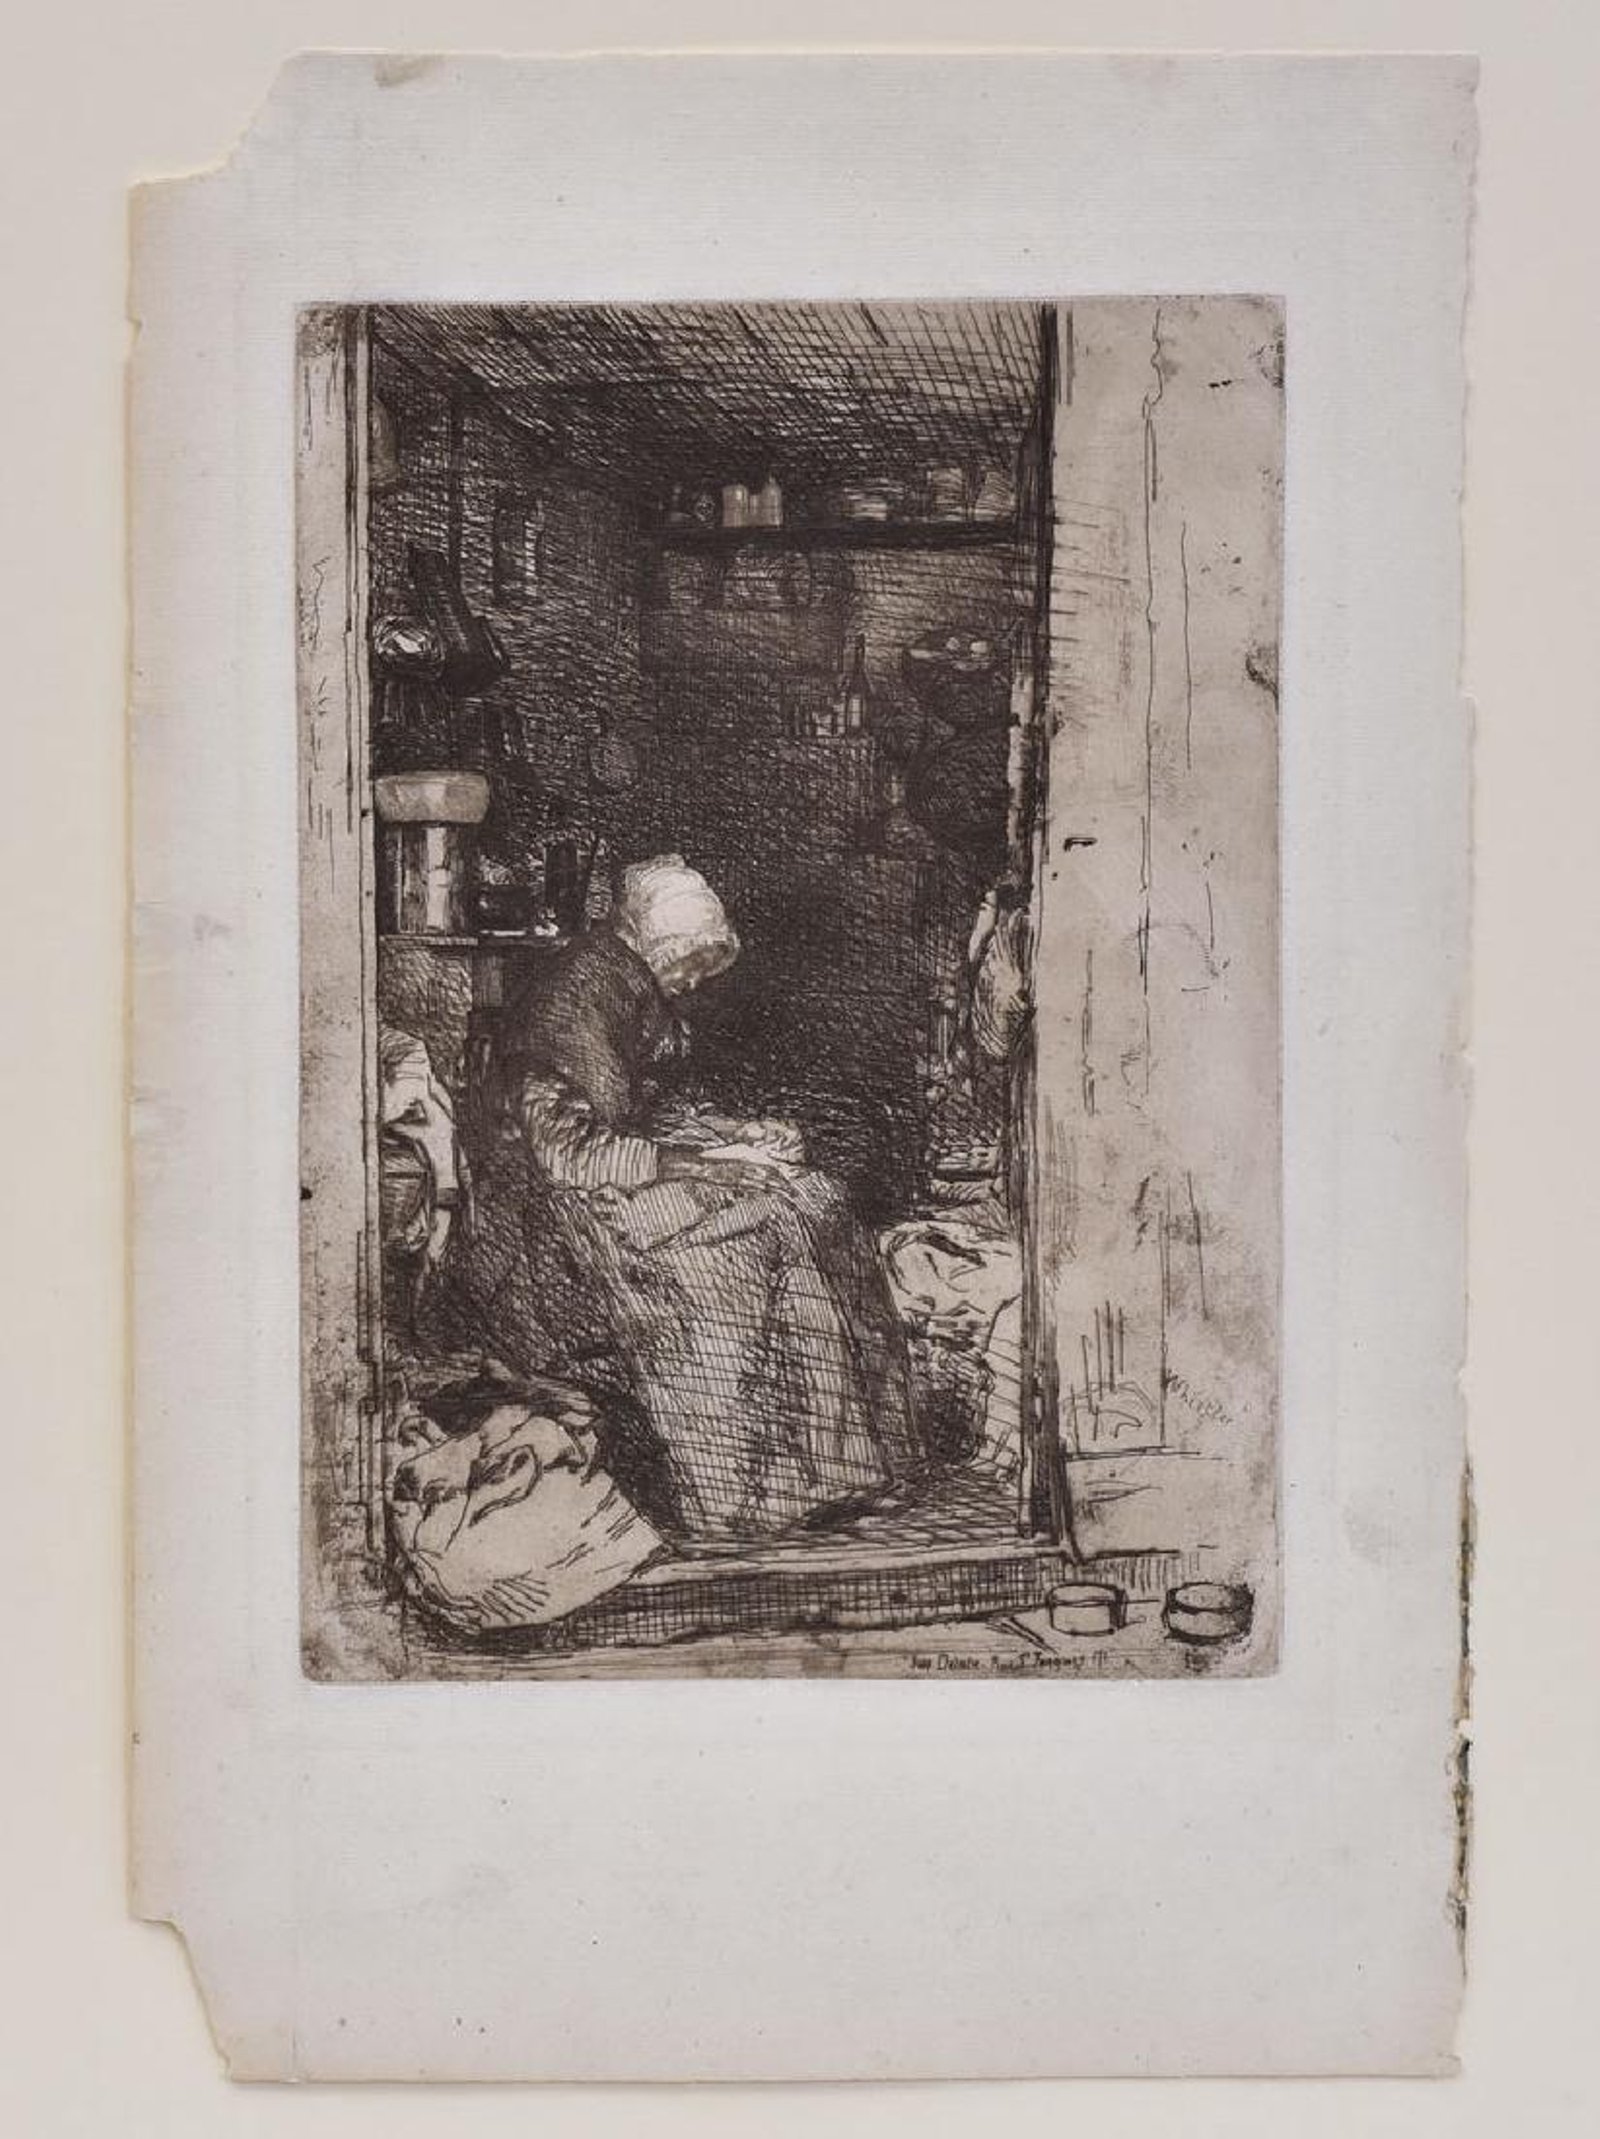 James Whistler, La Vieille aux Loques, etching, 1858